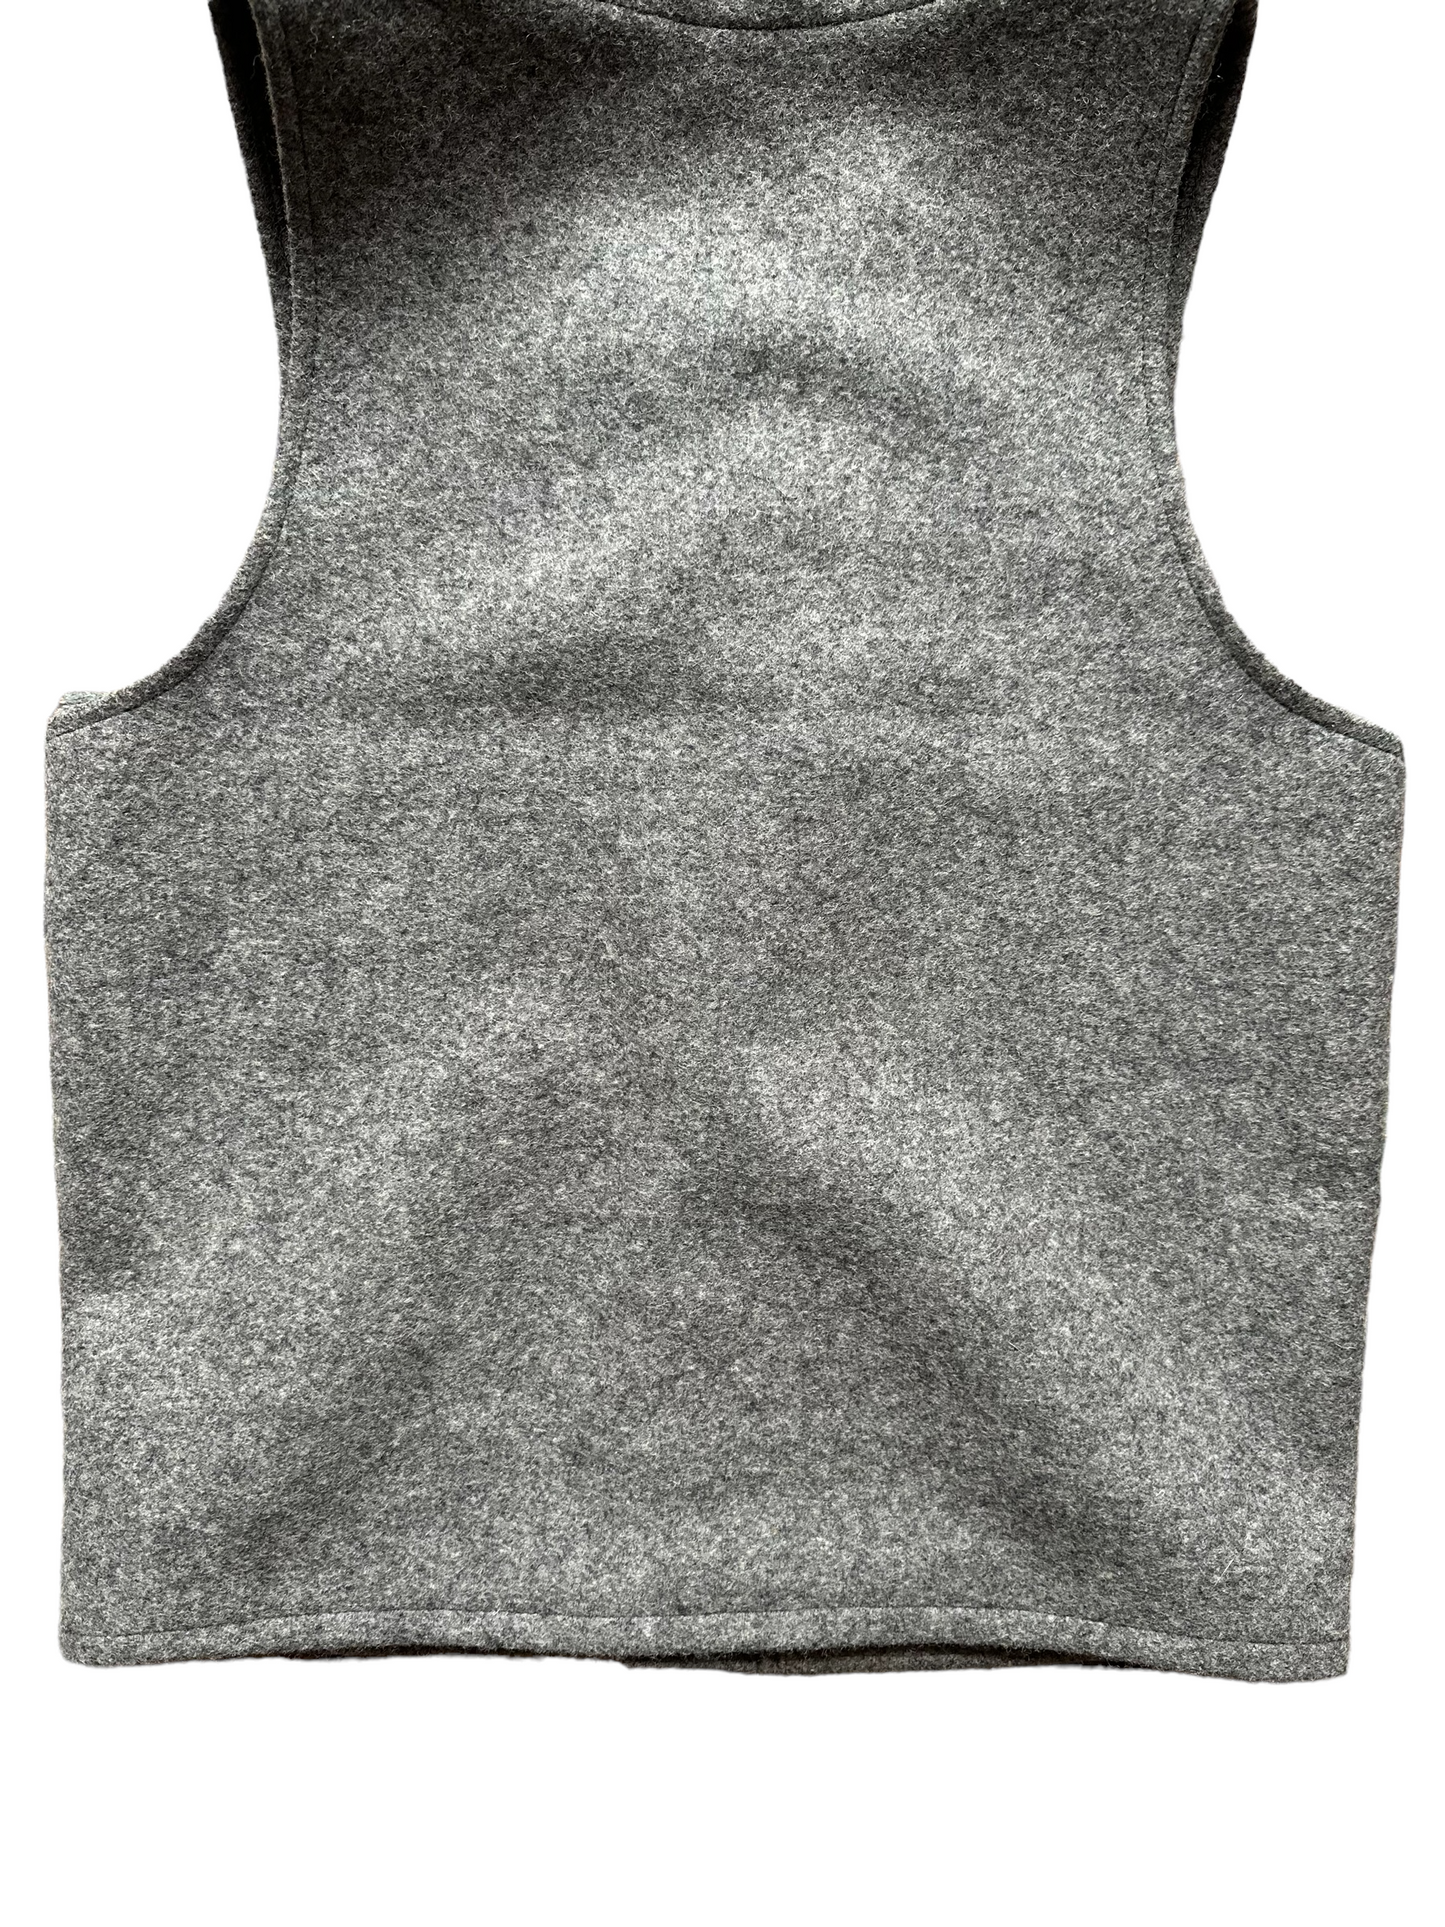 Lower Rear View  of Vintage Filson Mackinaw Vest SZ 36 |  Grey Wool Vest | Seattle Vintage Workwear